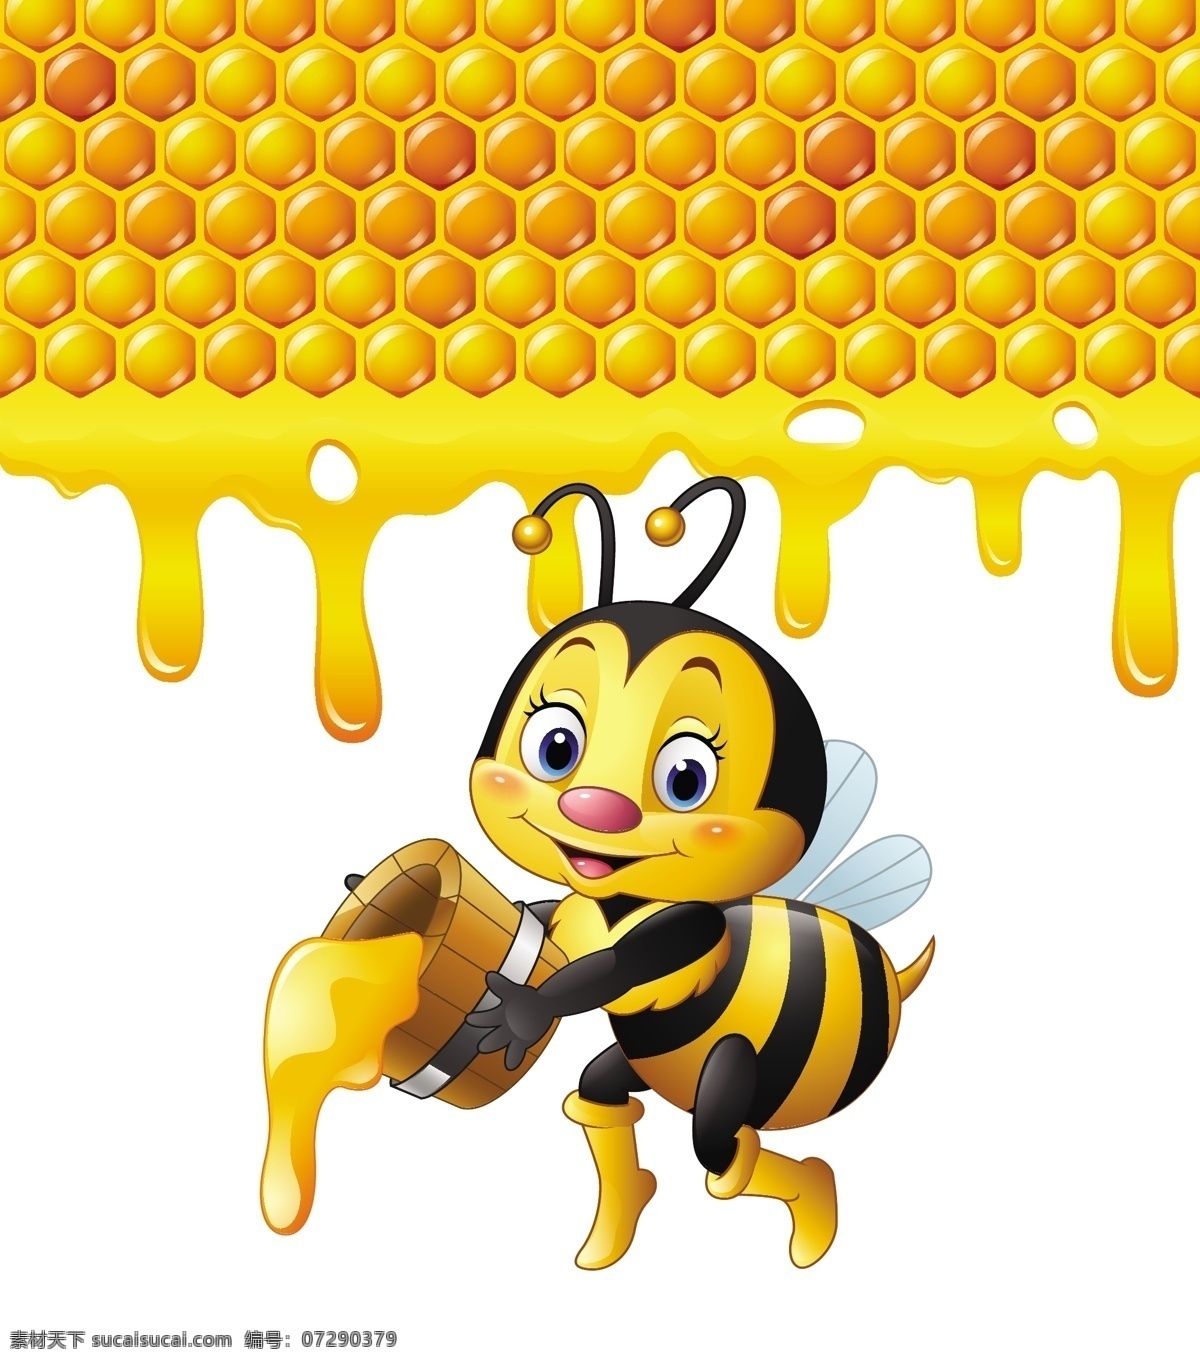 可爱卡通蜜蜂 时钟 卡通表情 卡通世界 小卡通 笑脸 卡通蜜蜂 可爱蜜蜂 蜜蜂 卡通动物